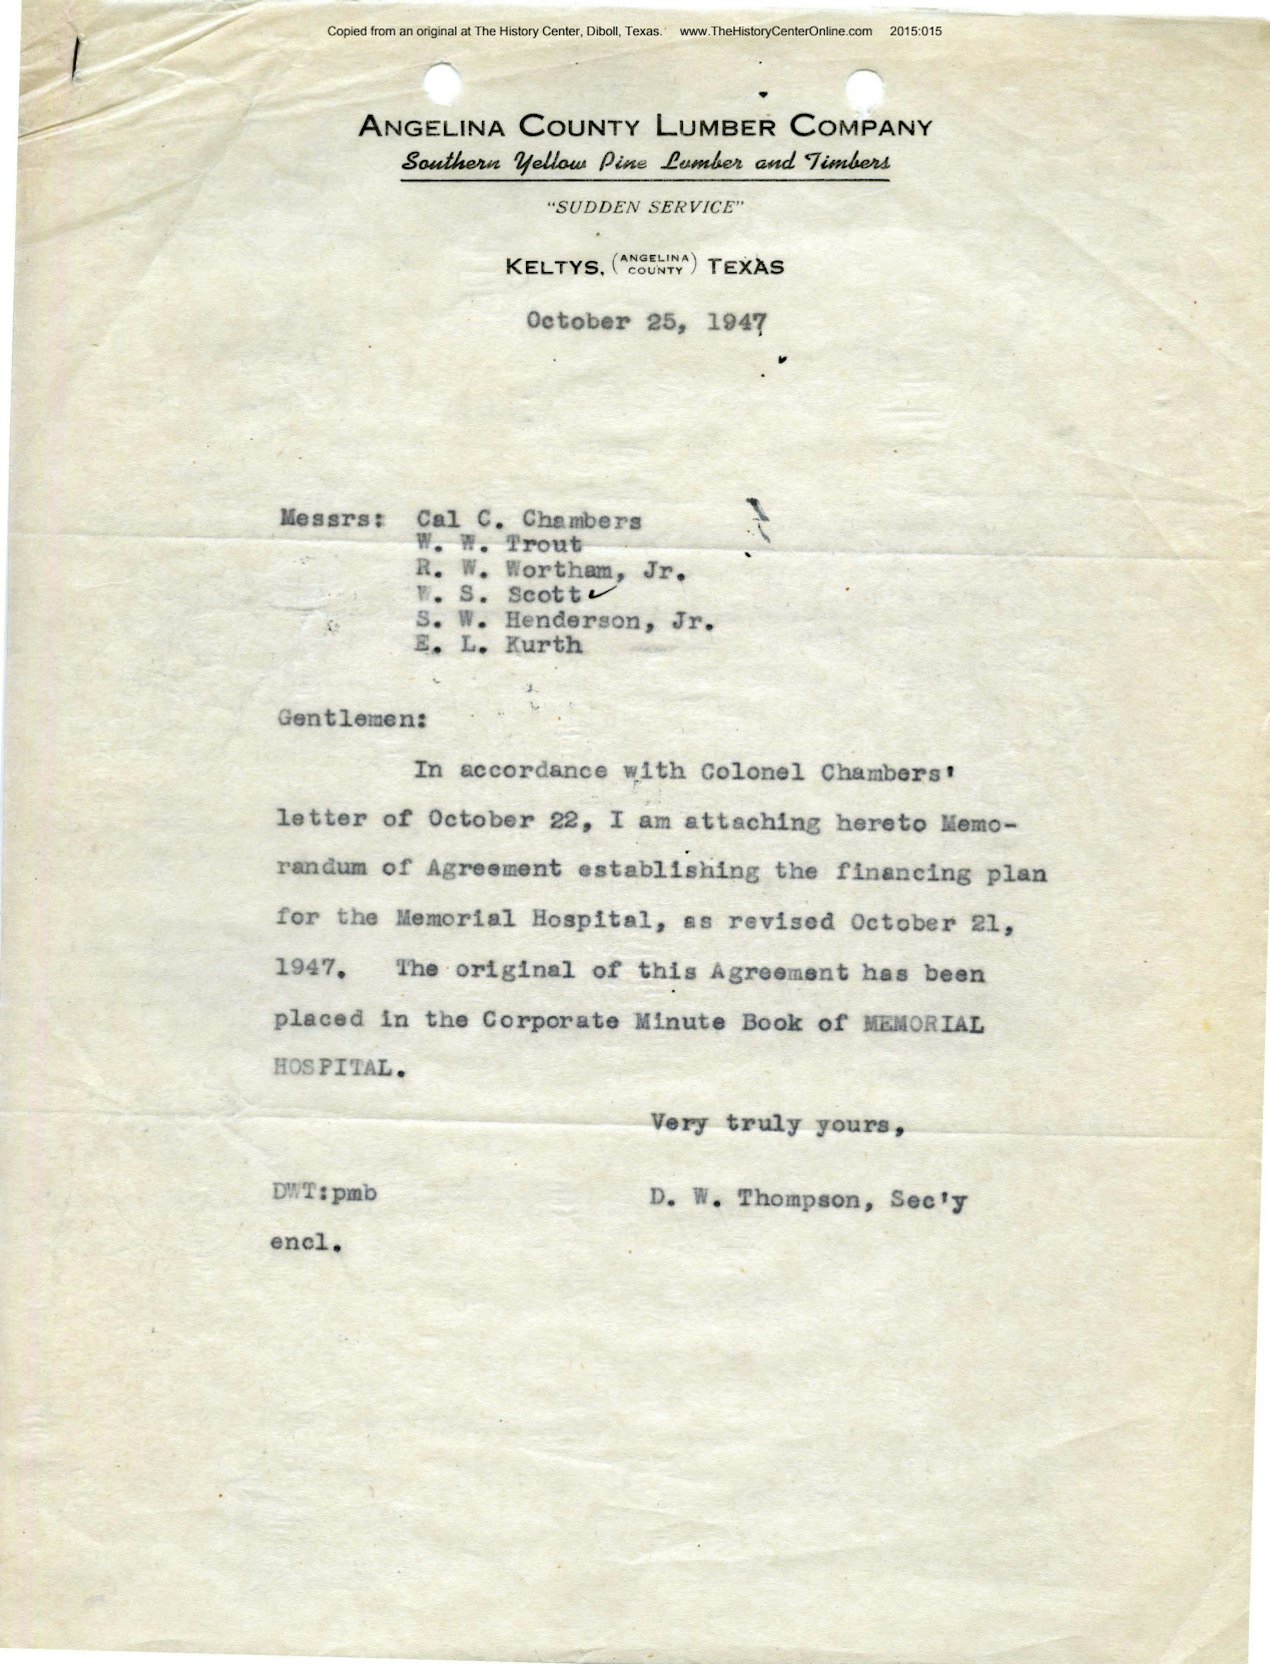 03 Memorial Hospital Memorandum of Agreement, 1947